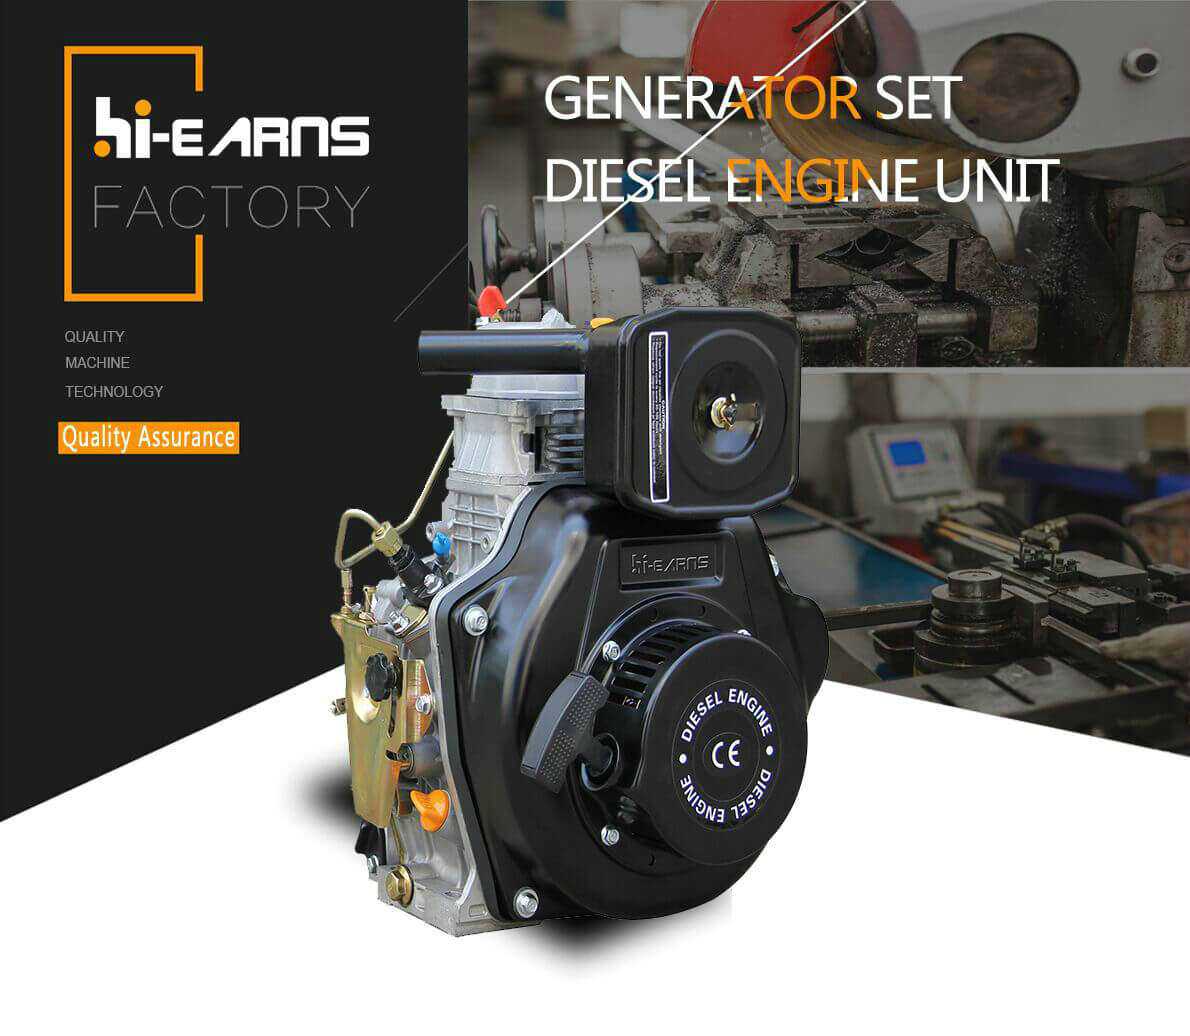 DG8500LE 220v 240 volts 50 hz Diesel Generator